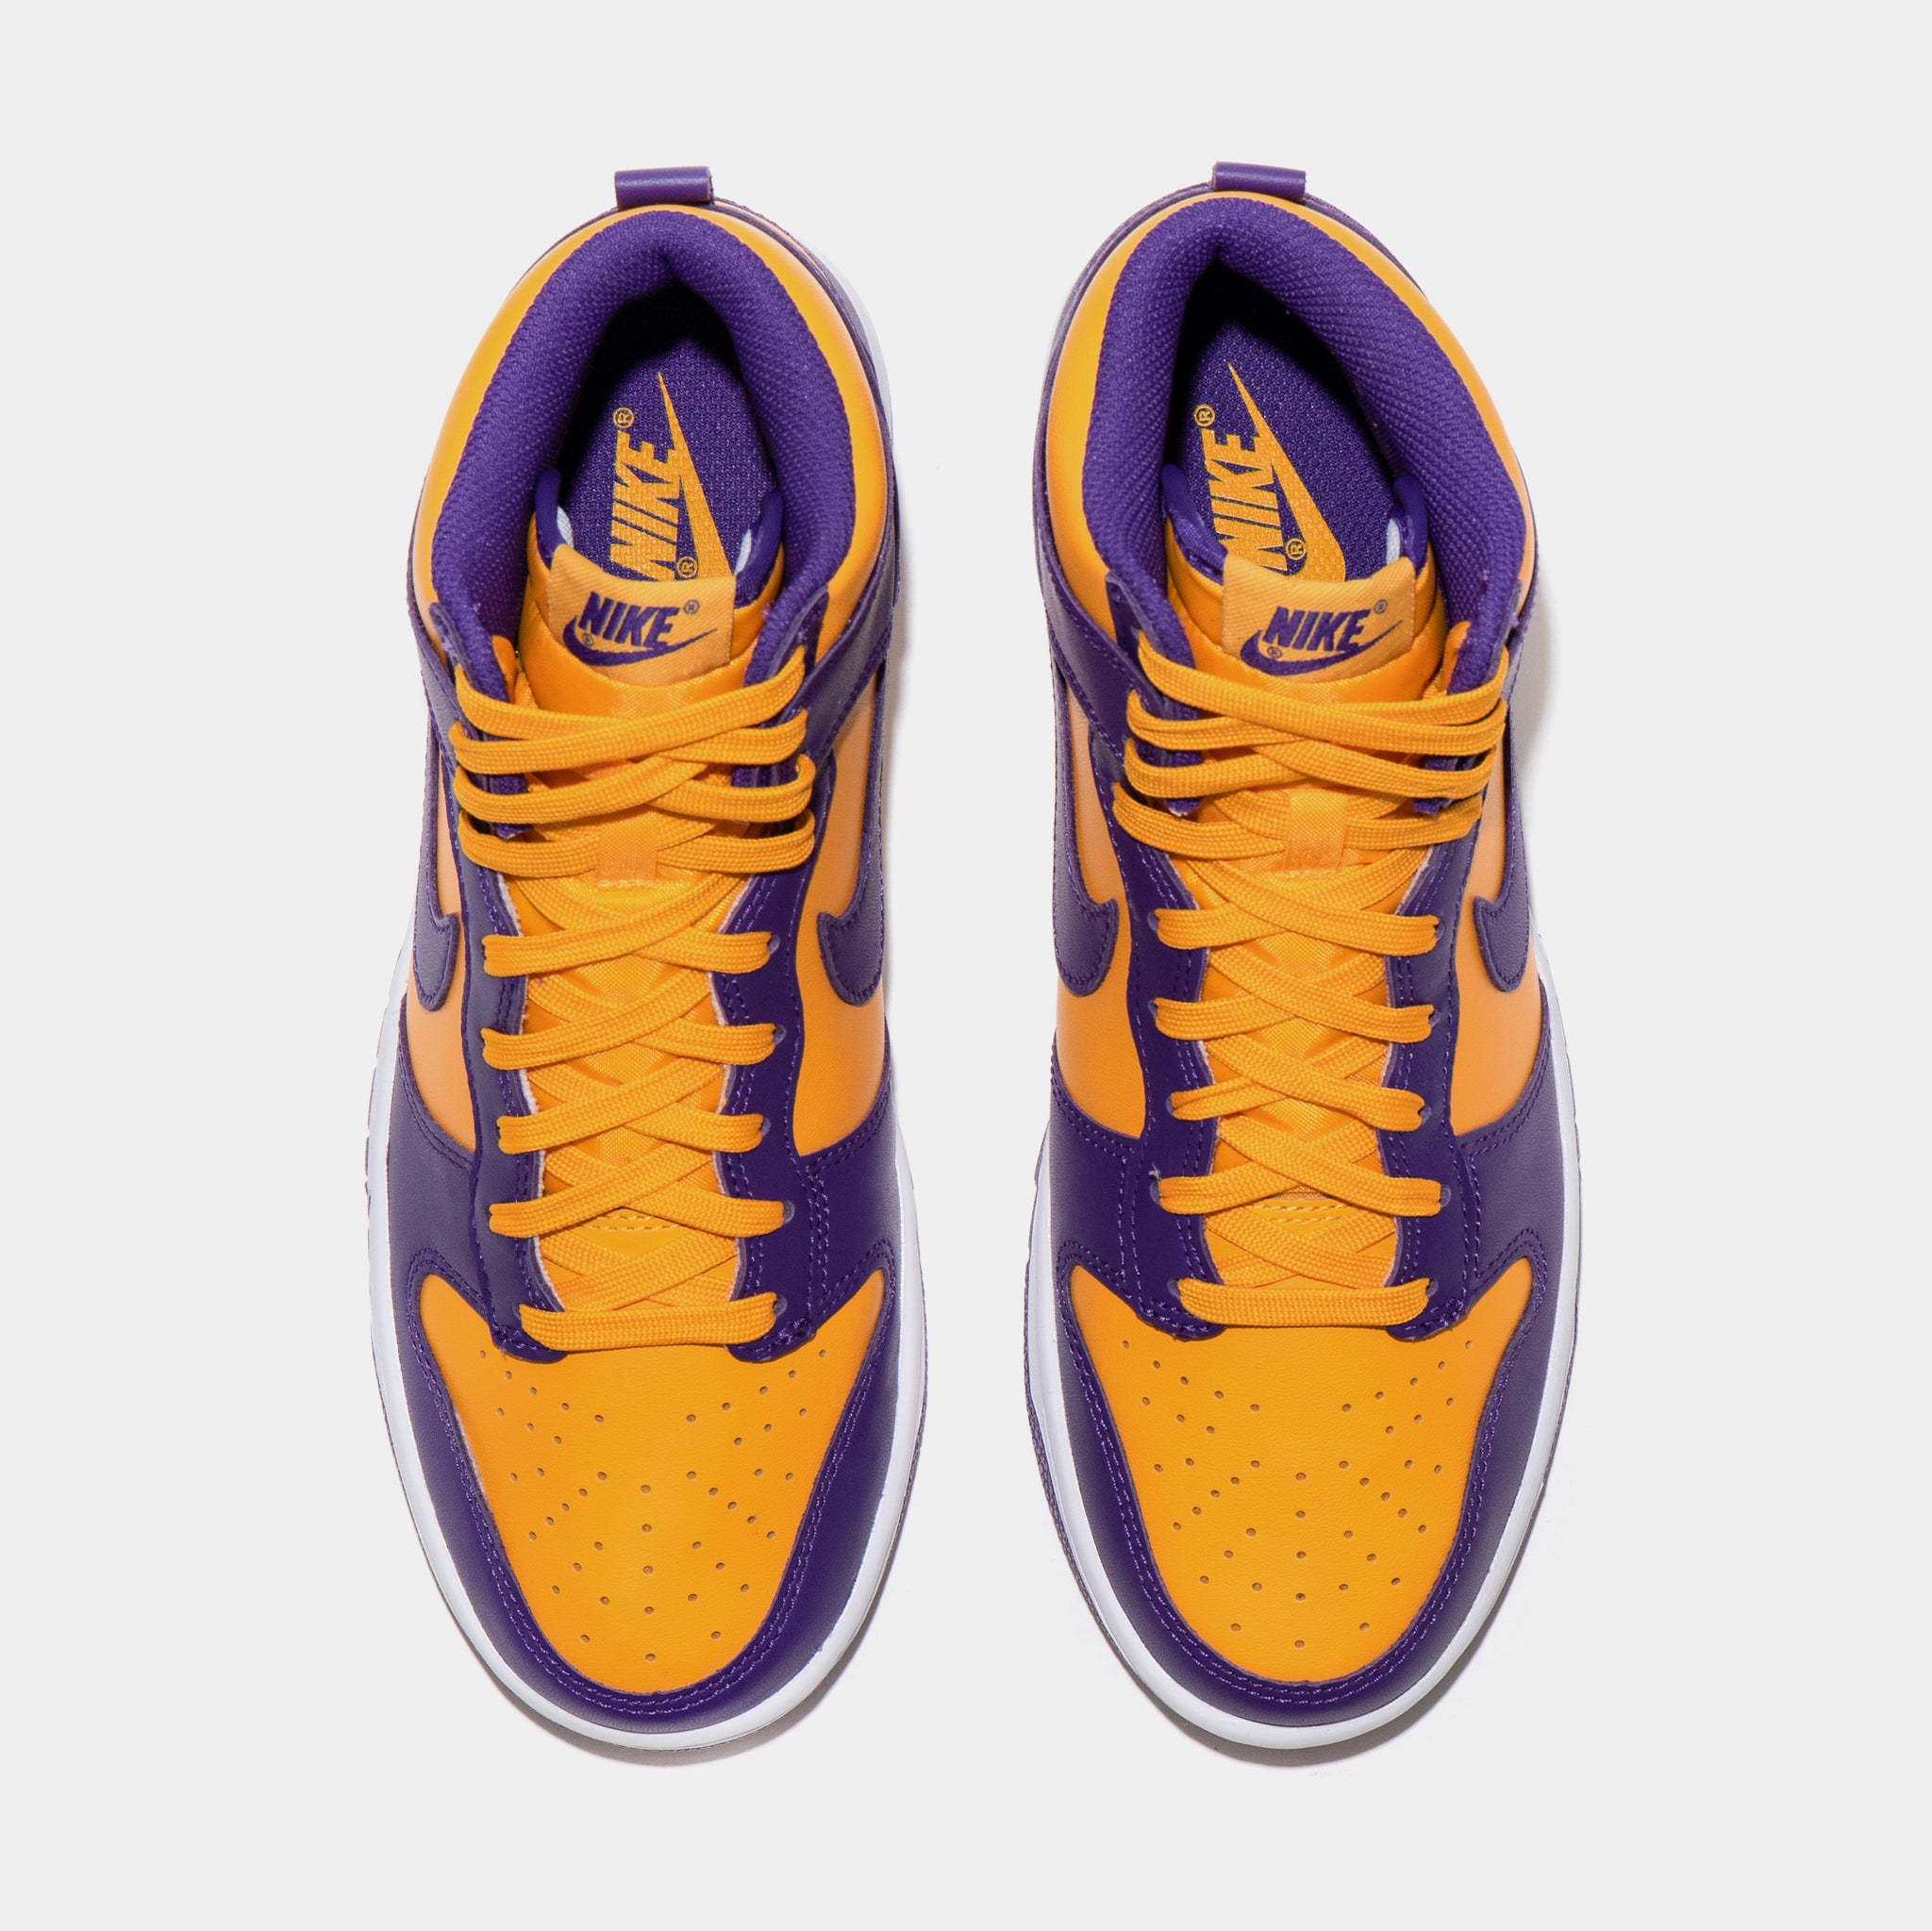 Air Jordan 13 Retro Lakers Men's Shoe - White/Court Purple/University Gold/Black - 10.5